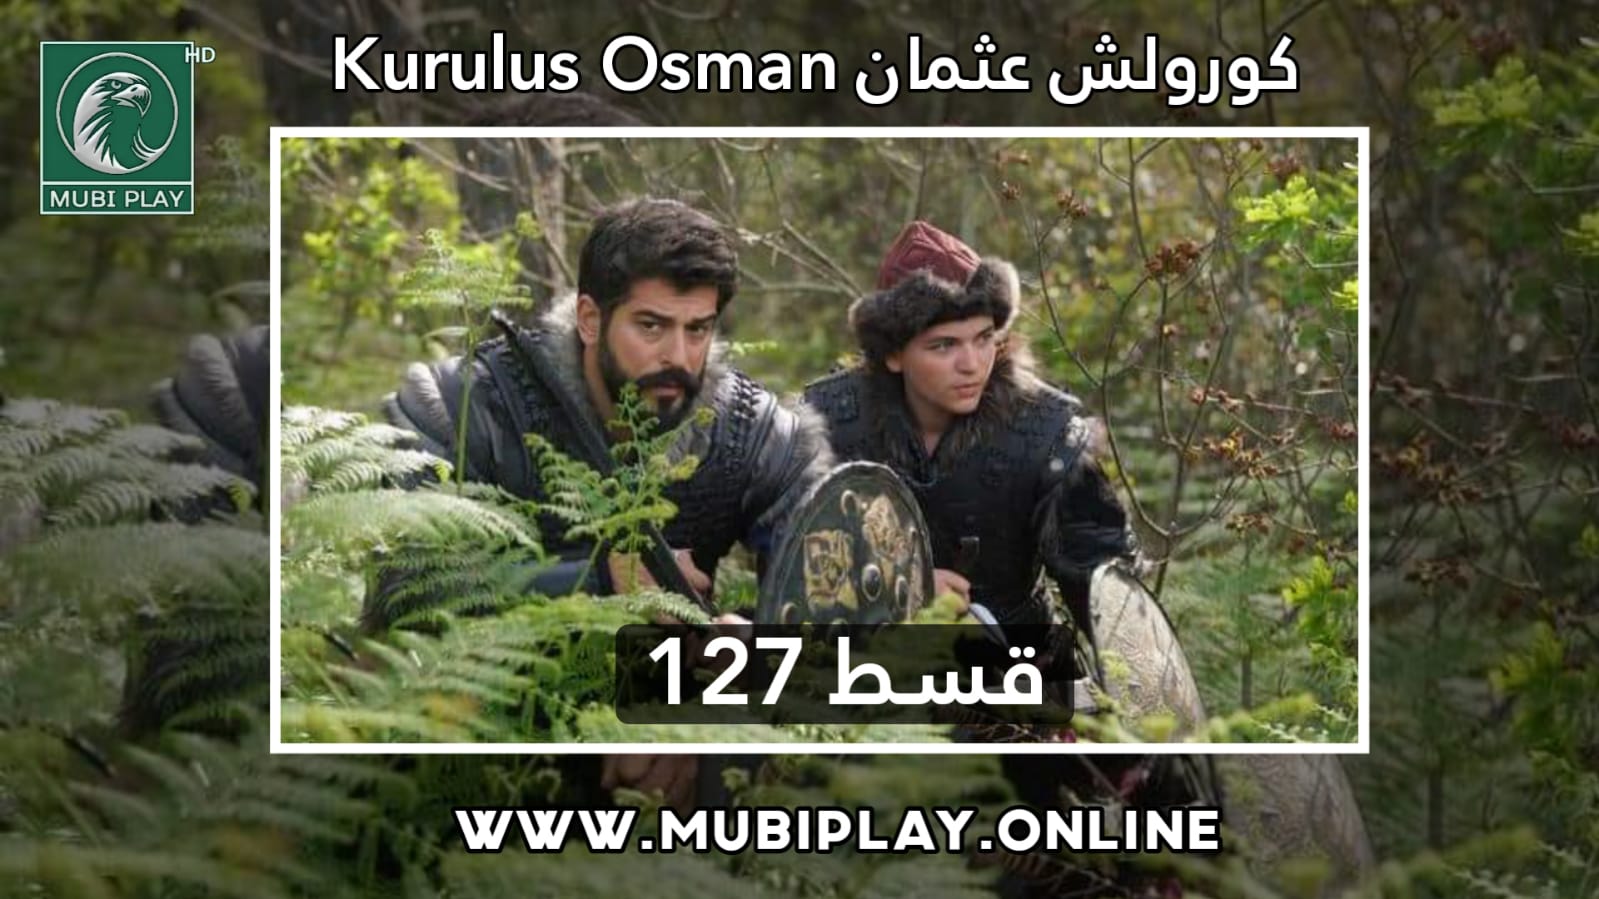 Kurulus Osman Episode 127 Urdu and English Subtitles by MubiPlay